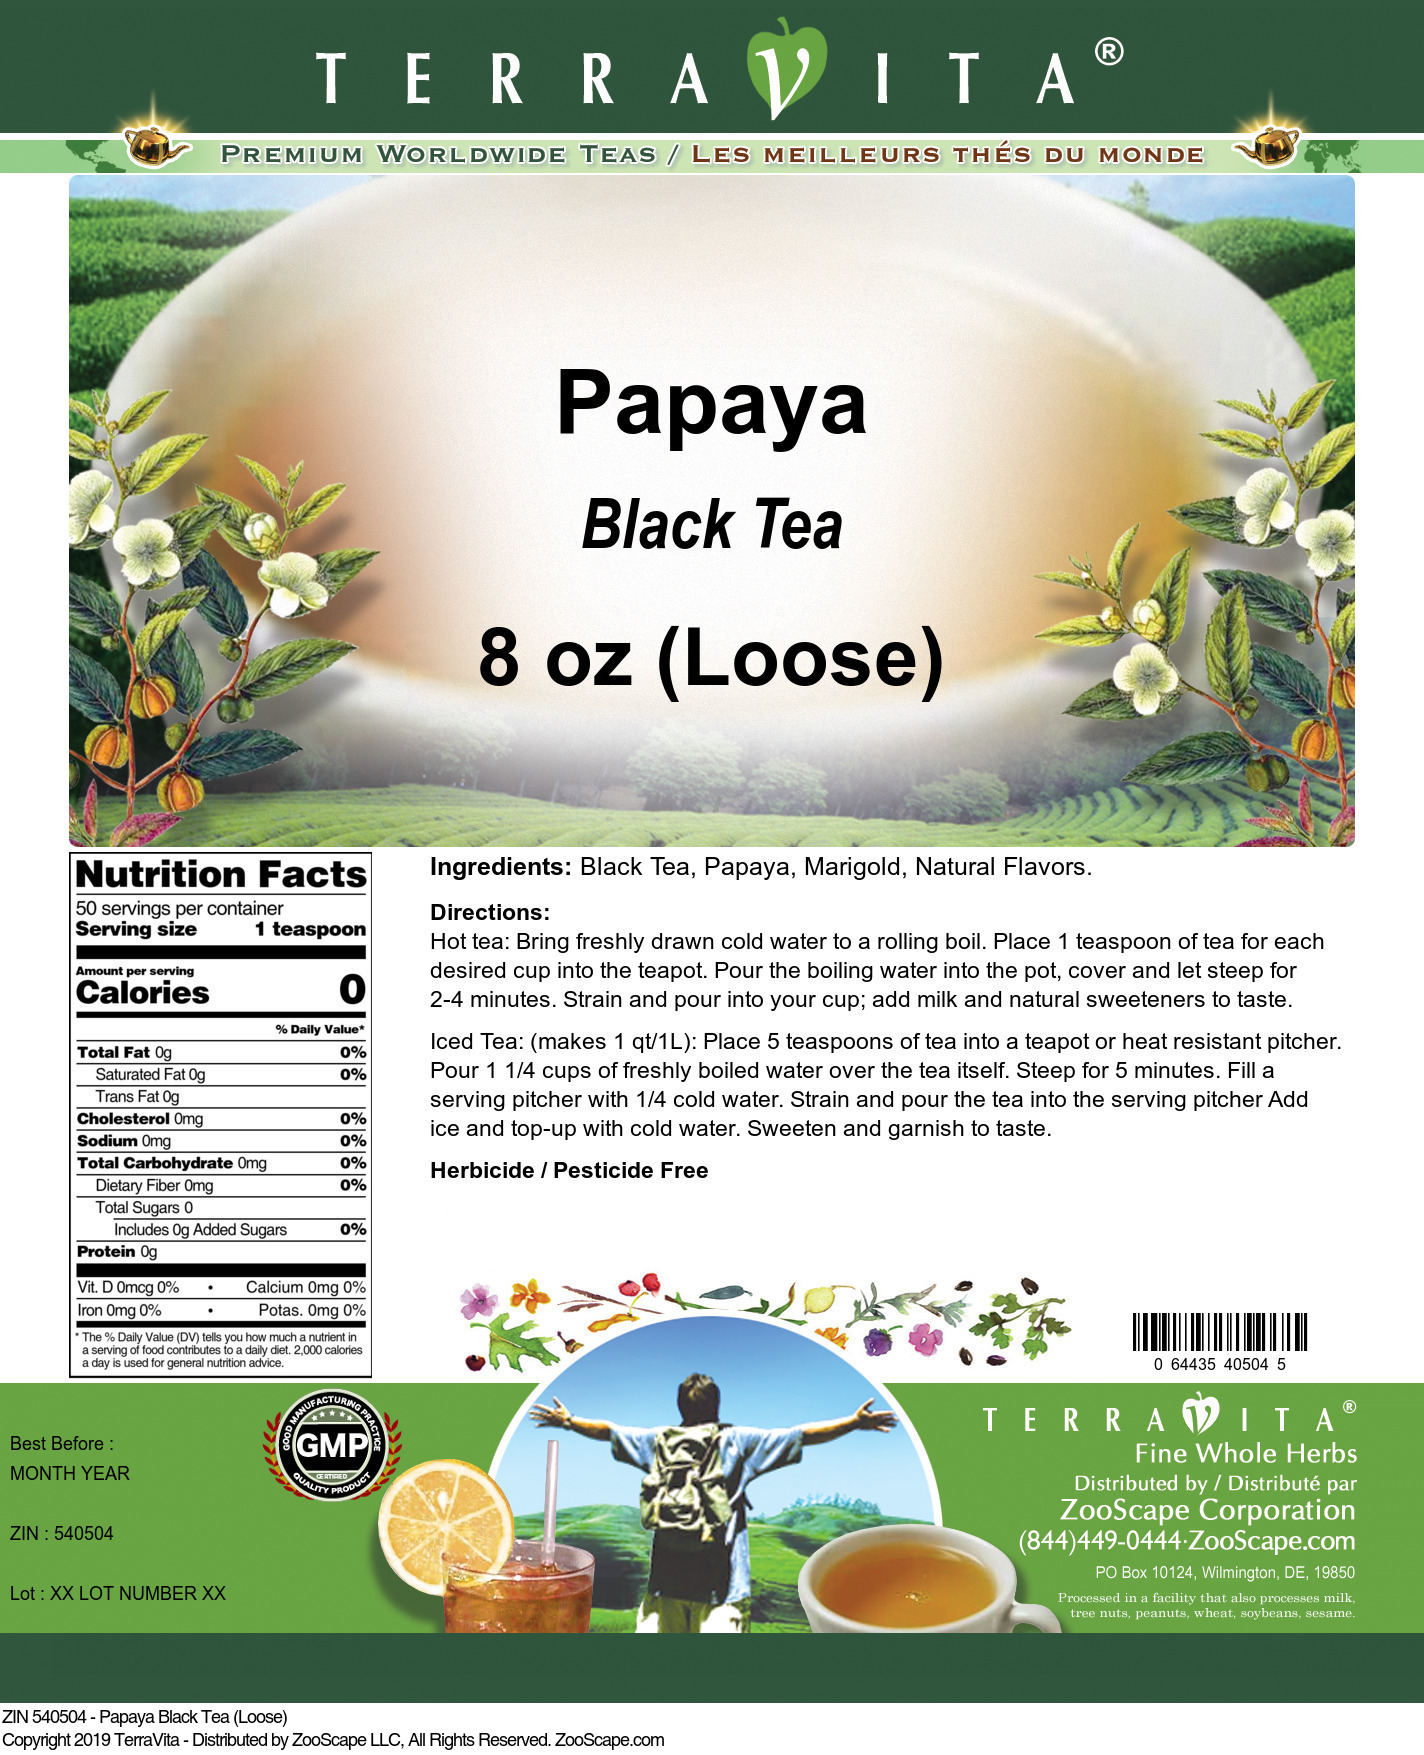 Papaya Black Tea (Loose) - Label